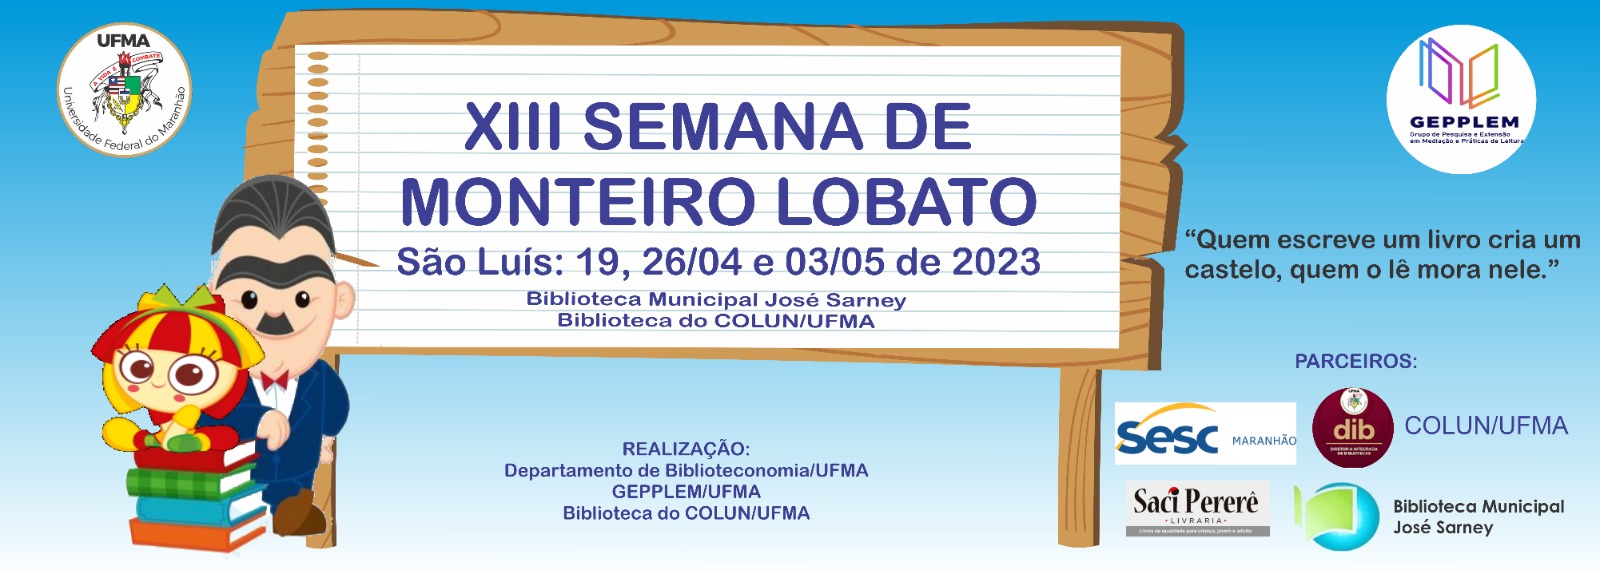 Departamento do curso de Biblioteconomia de São Luís promove “XIII Semana de Monteiro Lobato”